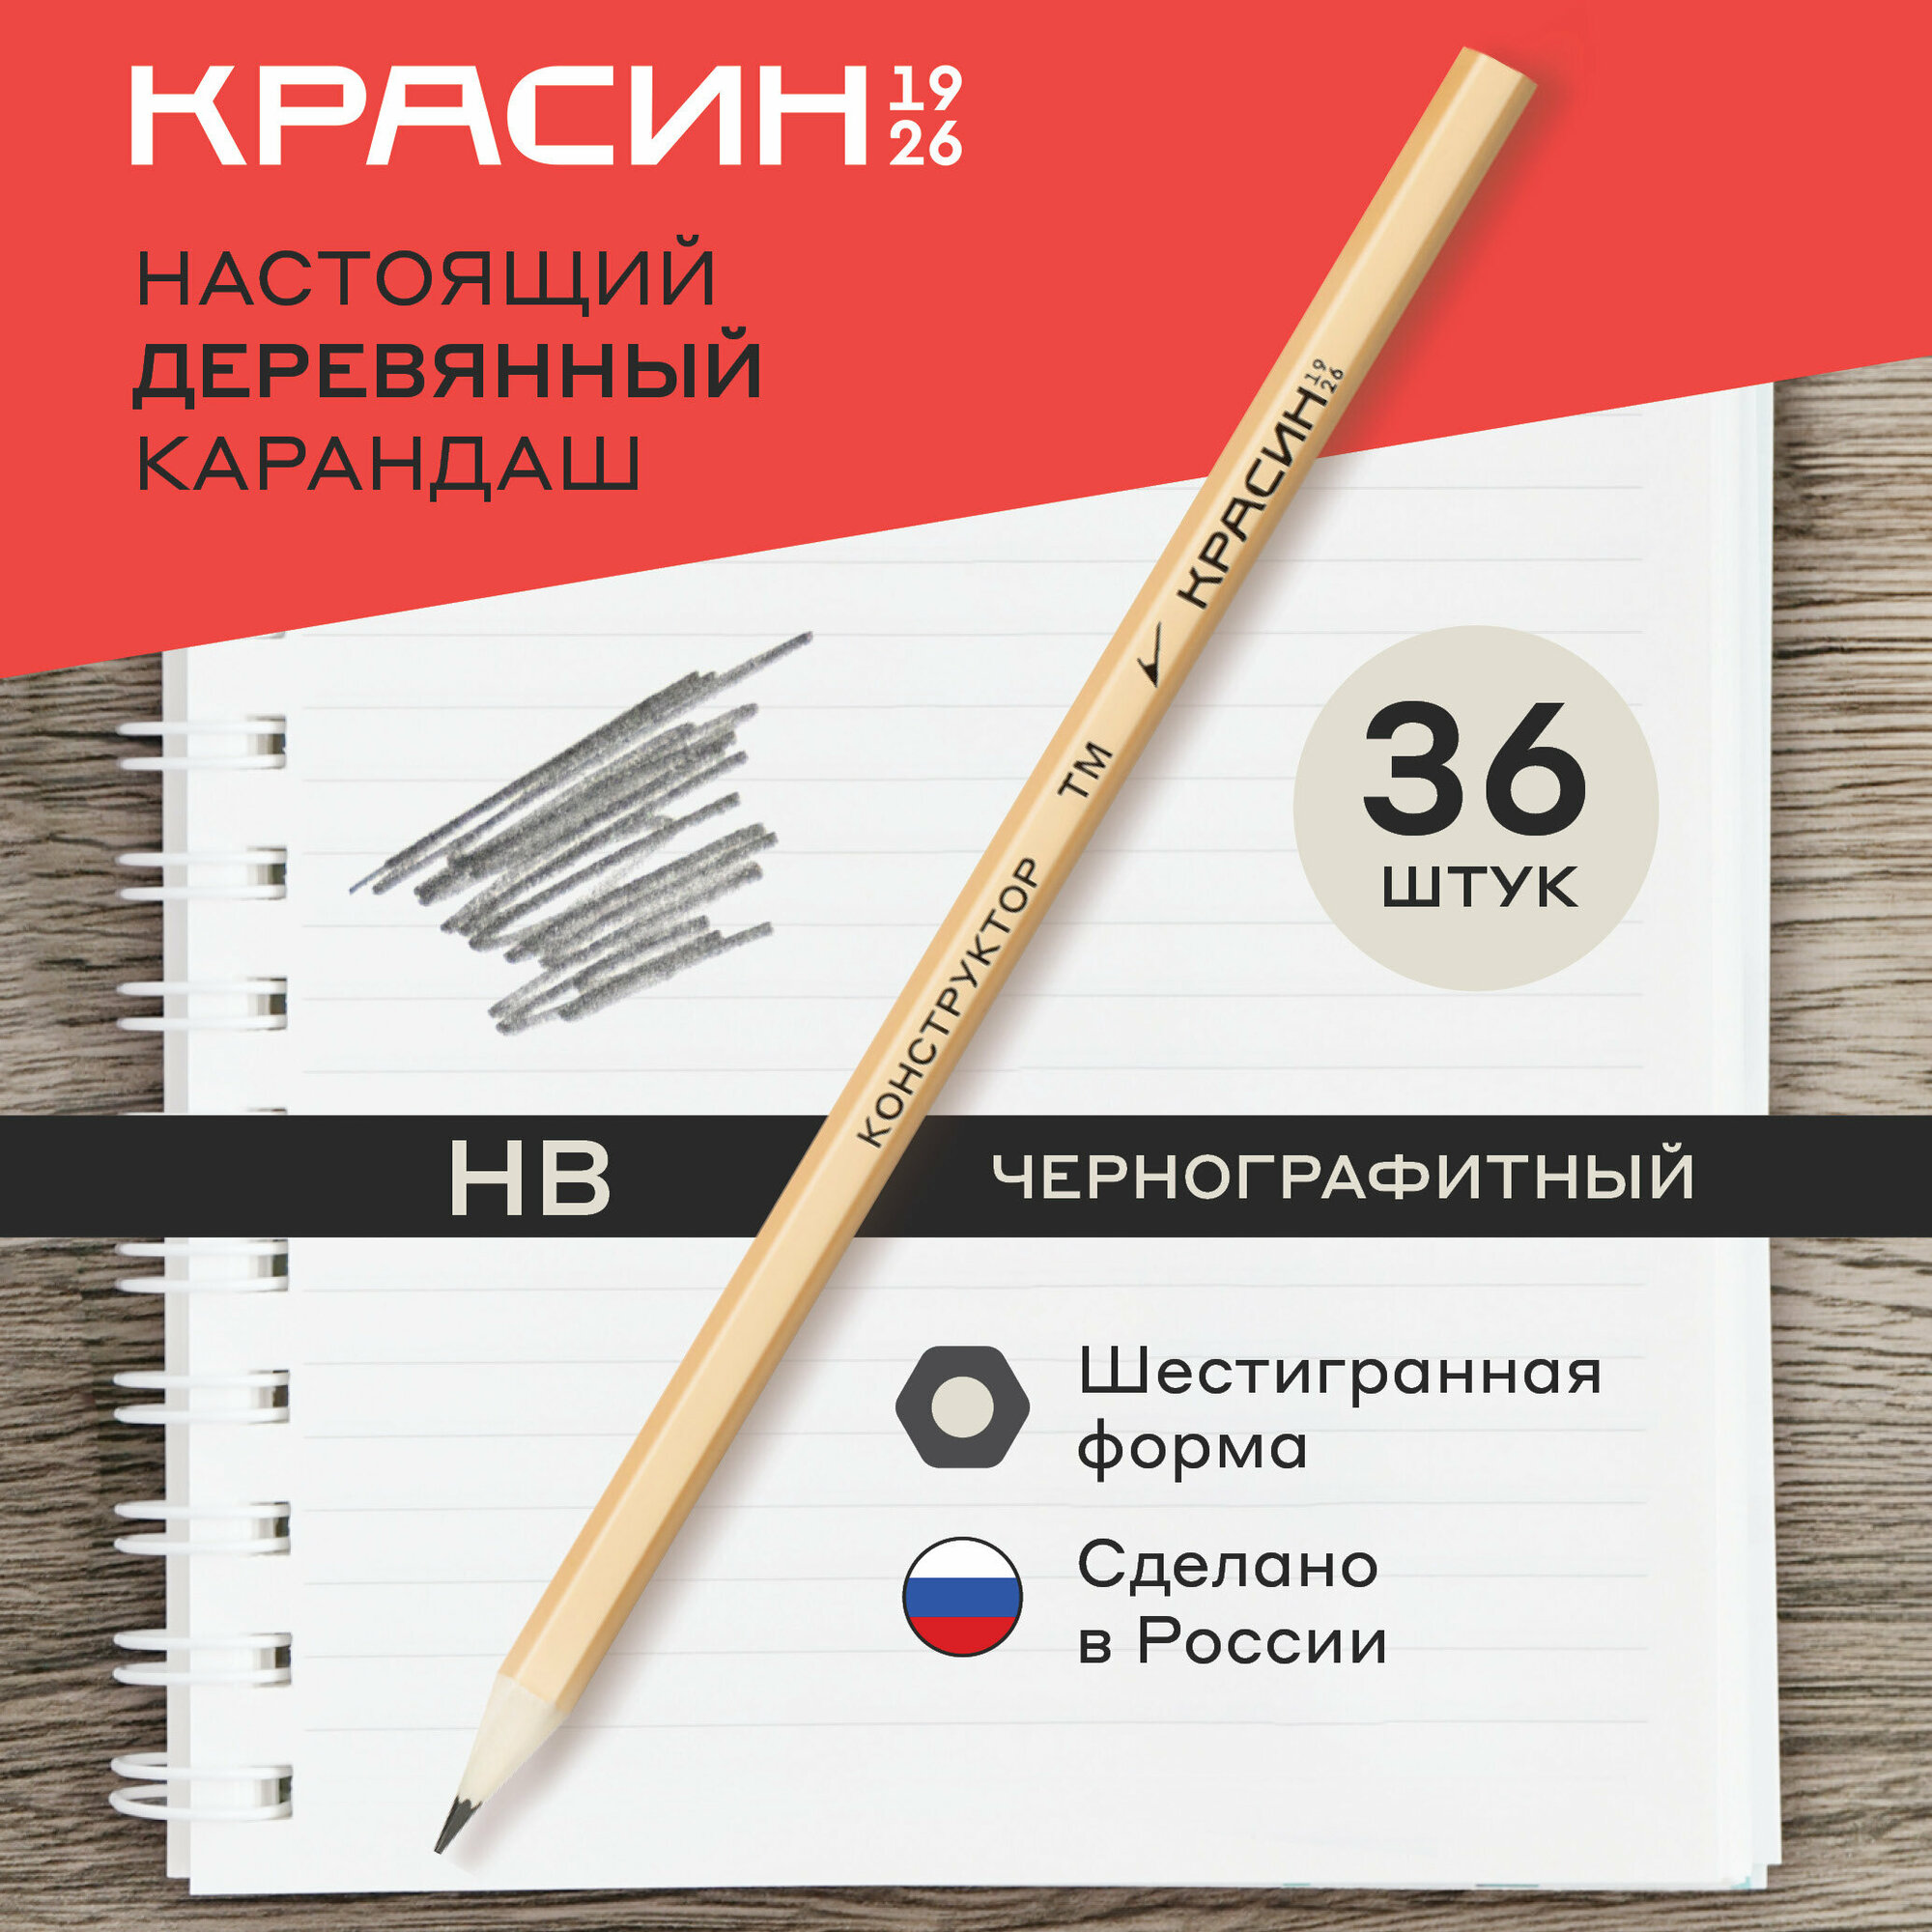 Карандаш простой для школы HB / Набор простых карандашей для рисования и офиса из 36 штук Красин "Конструктор" / чернографитные карандаши